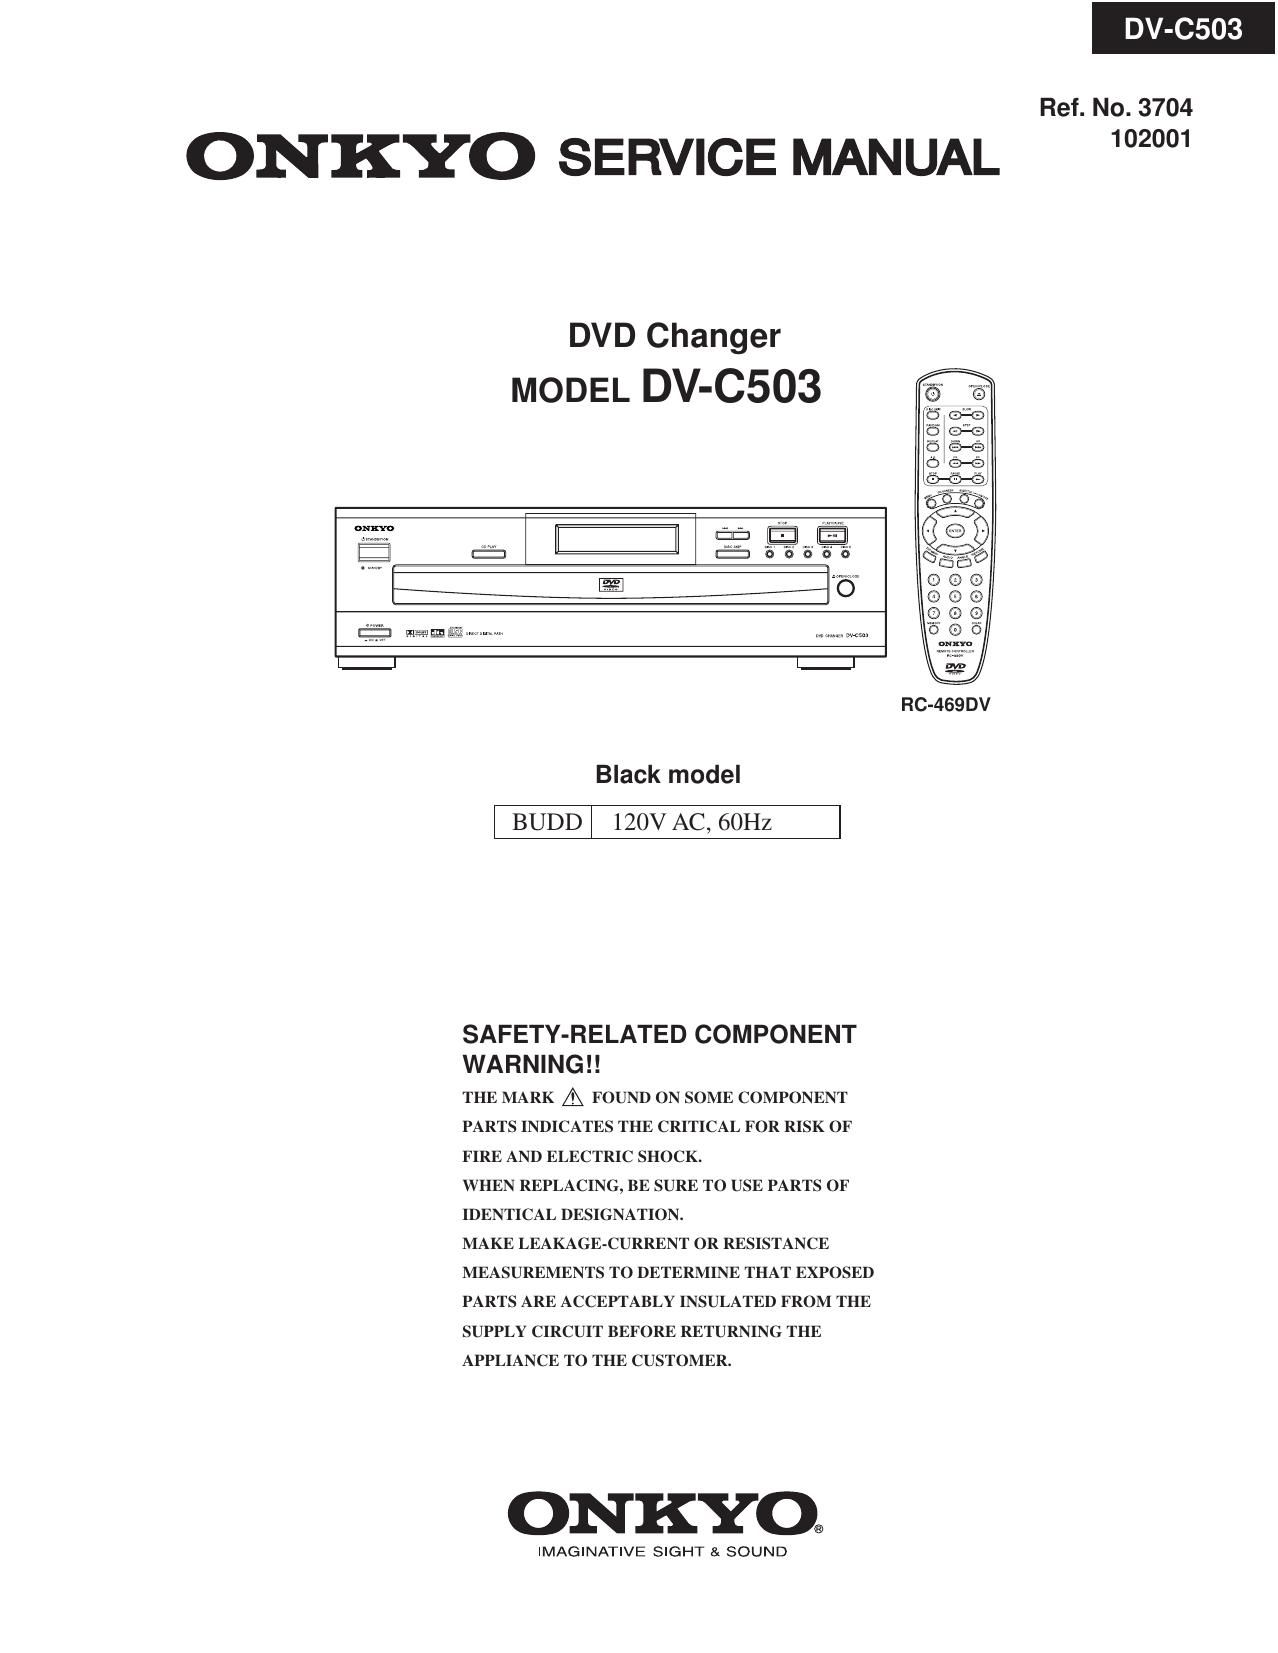 Onkyo DVC 503 Service Manual